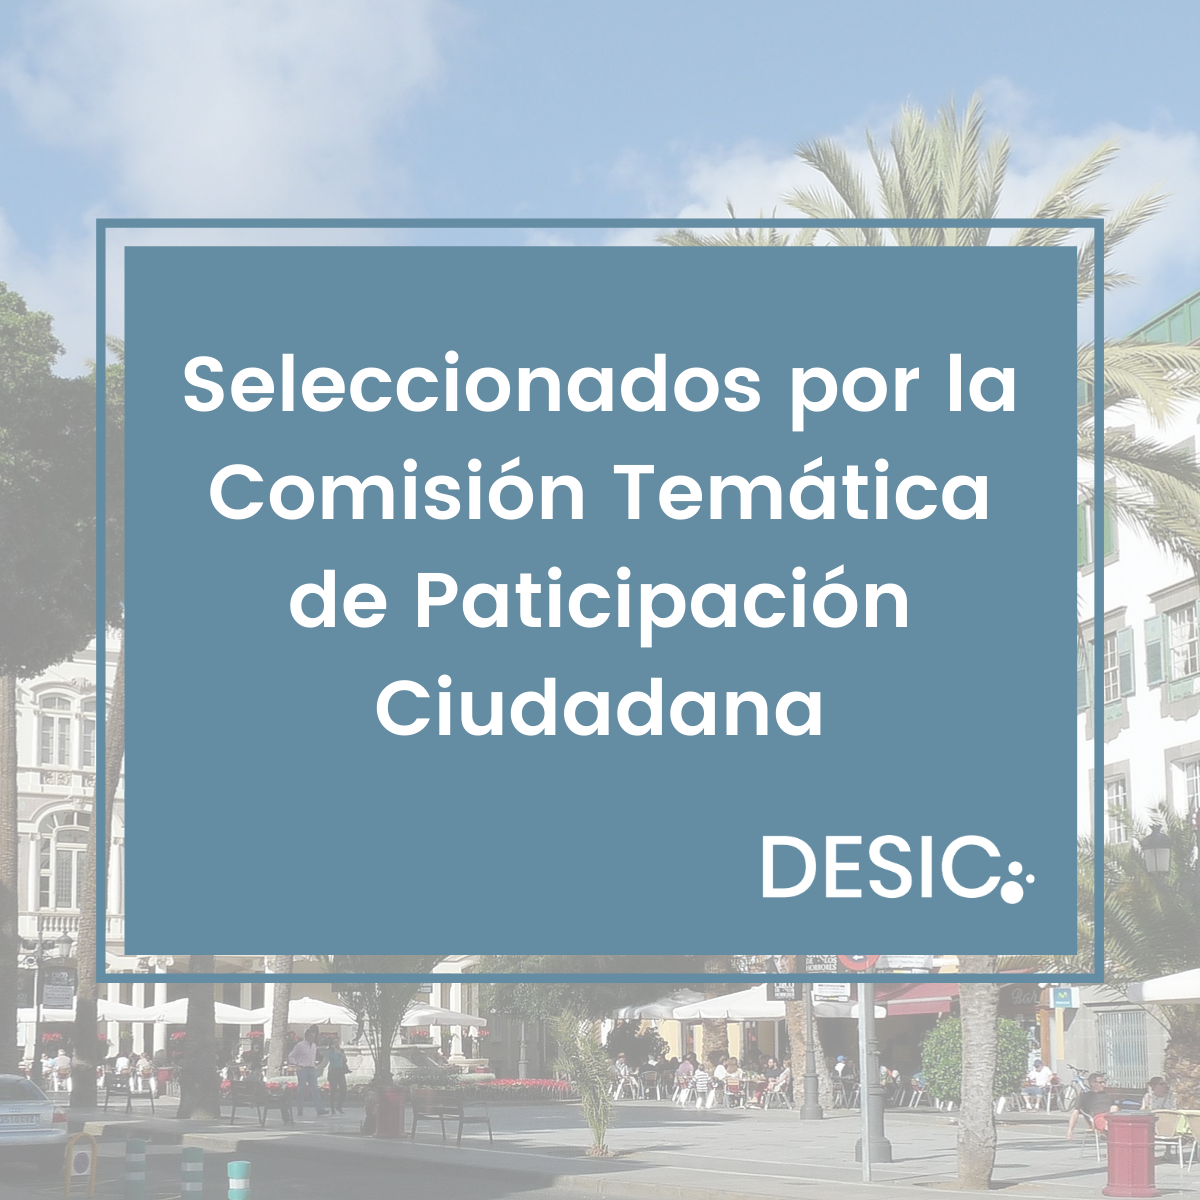 DESIC Participación Ciudadana